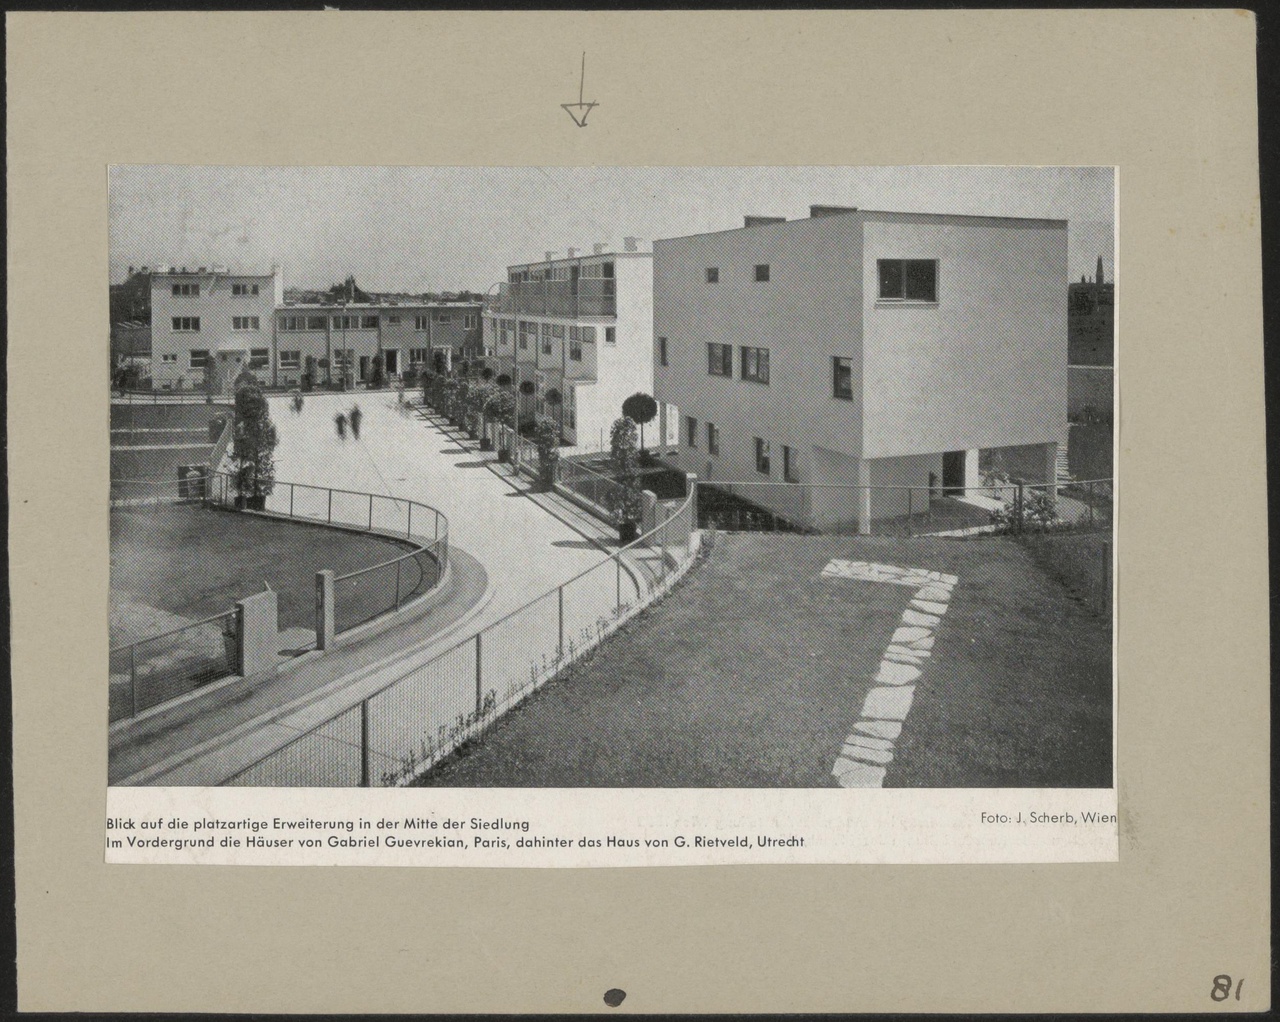 Afbeelding van straatje Werkbundsiedlung Wenen, ca.1932